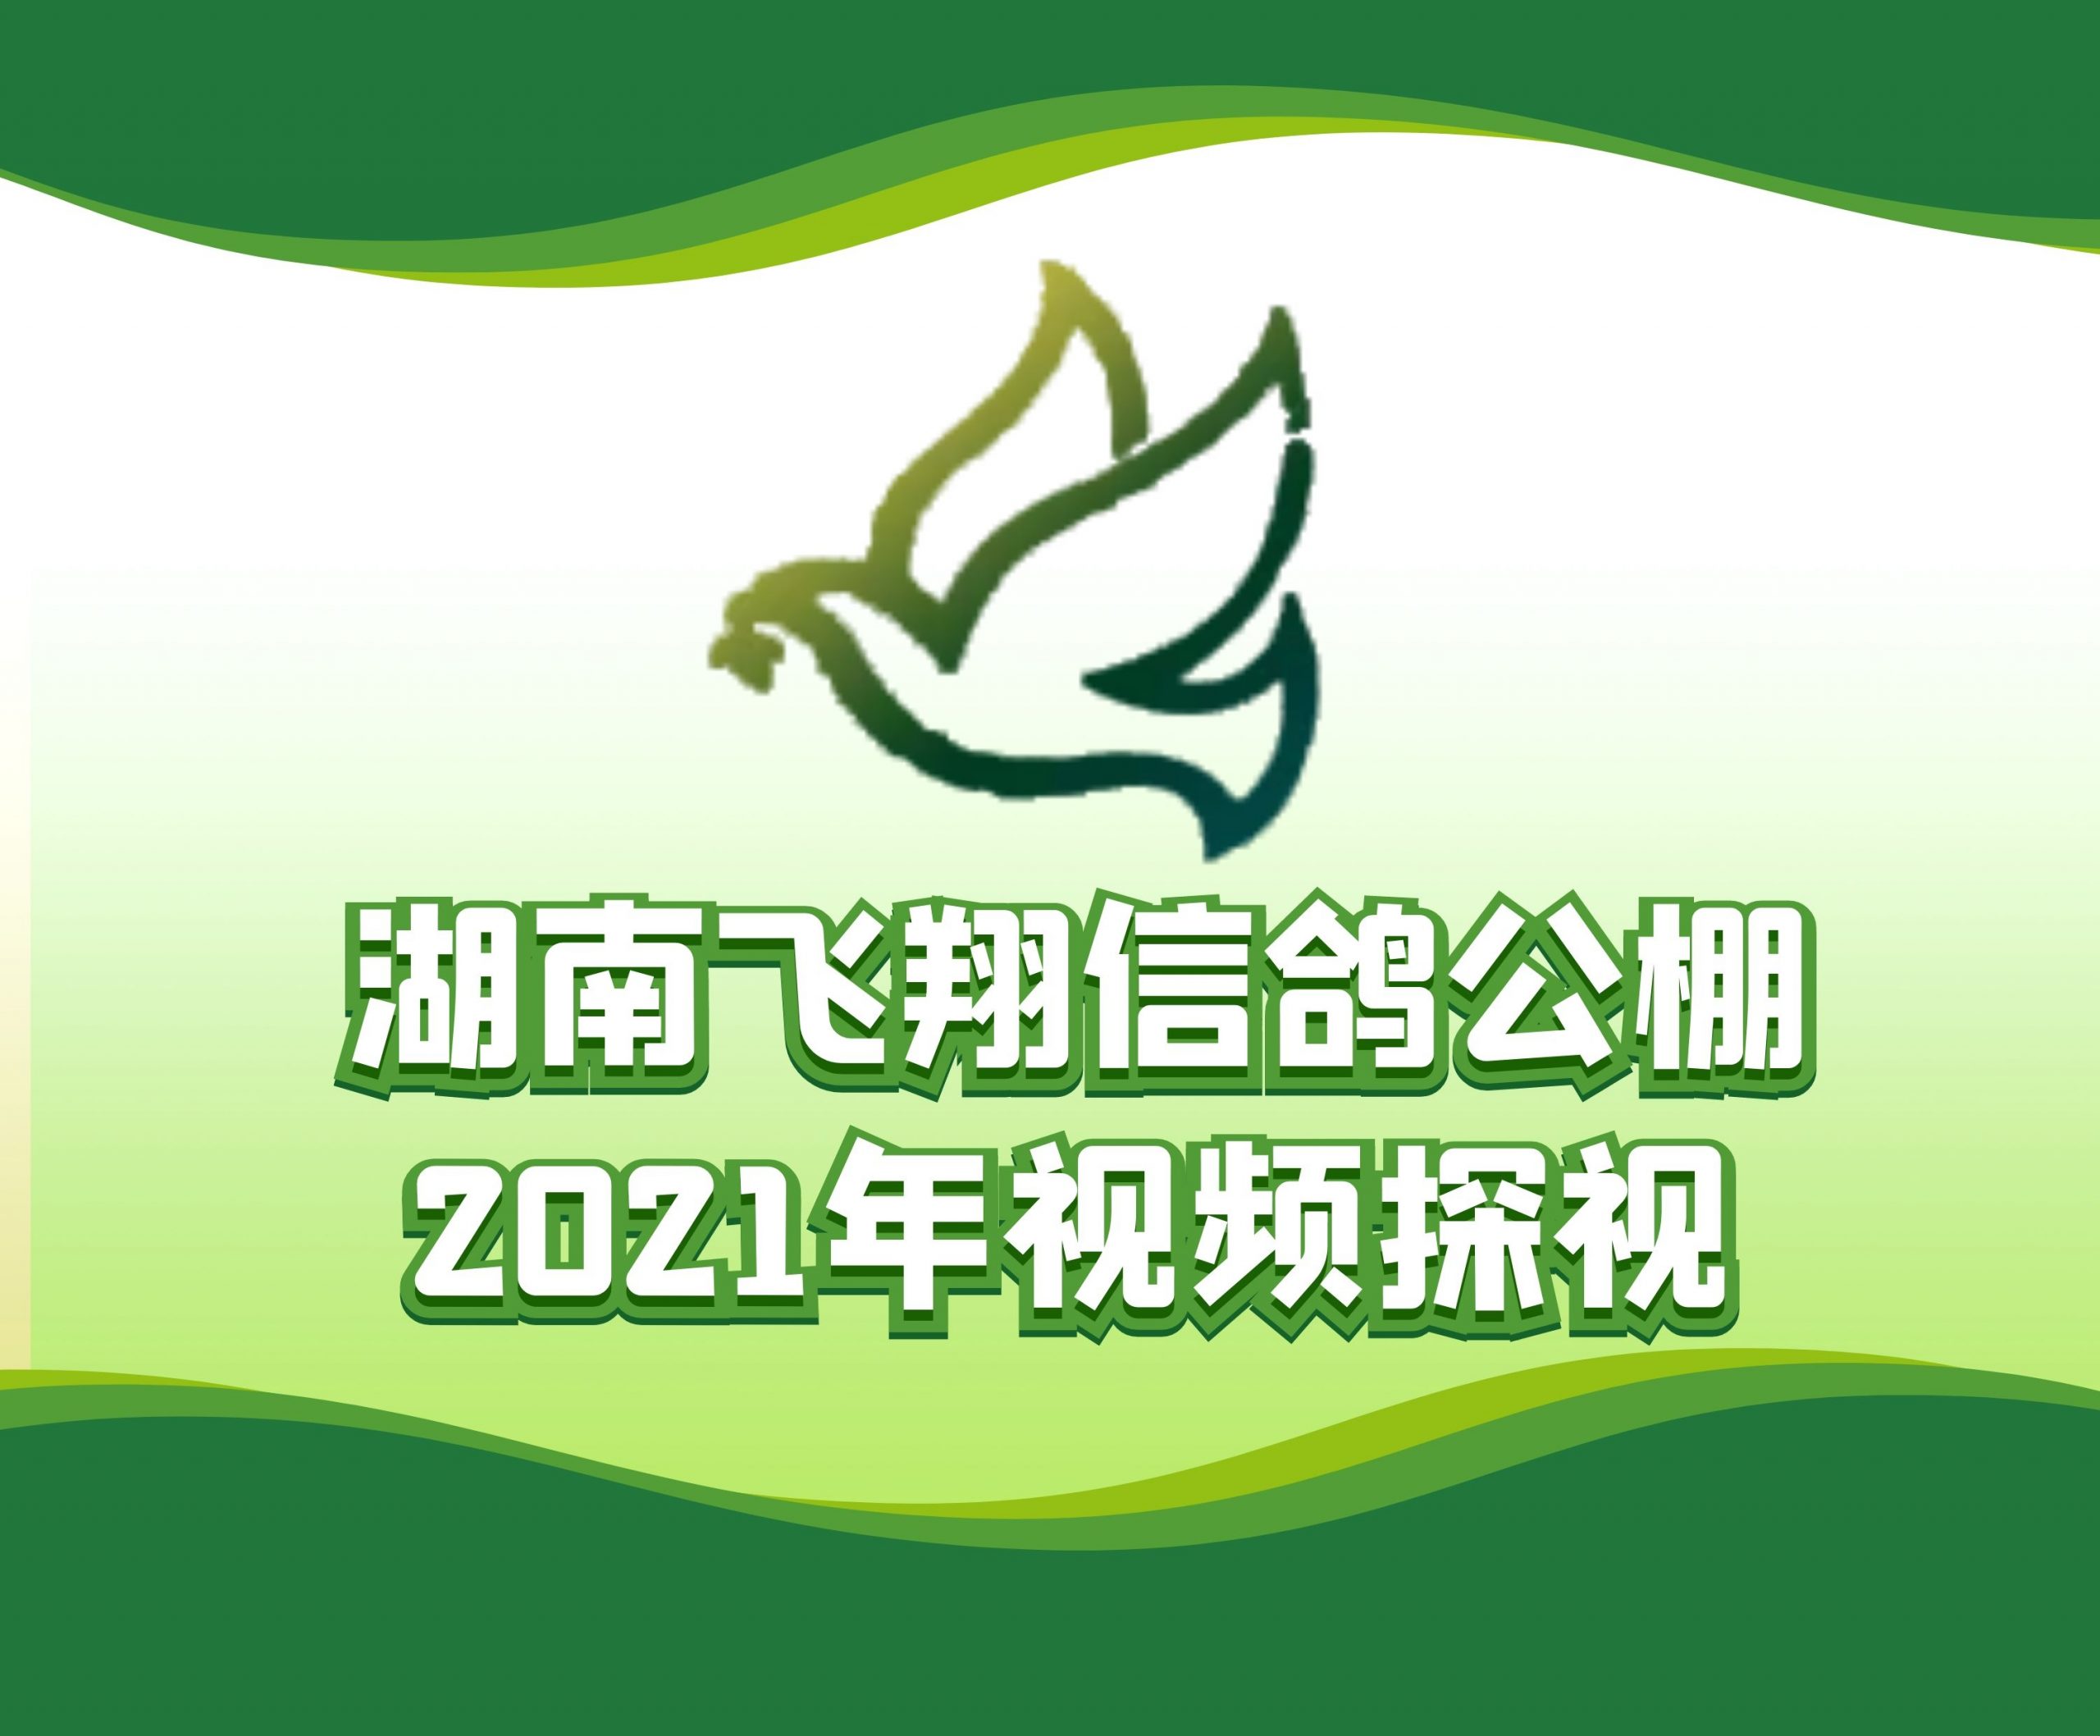 黄正民-2021-18-0125723